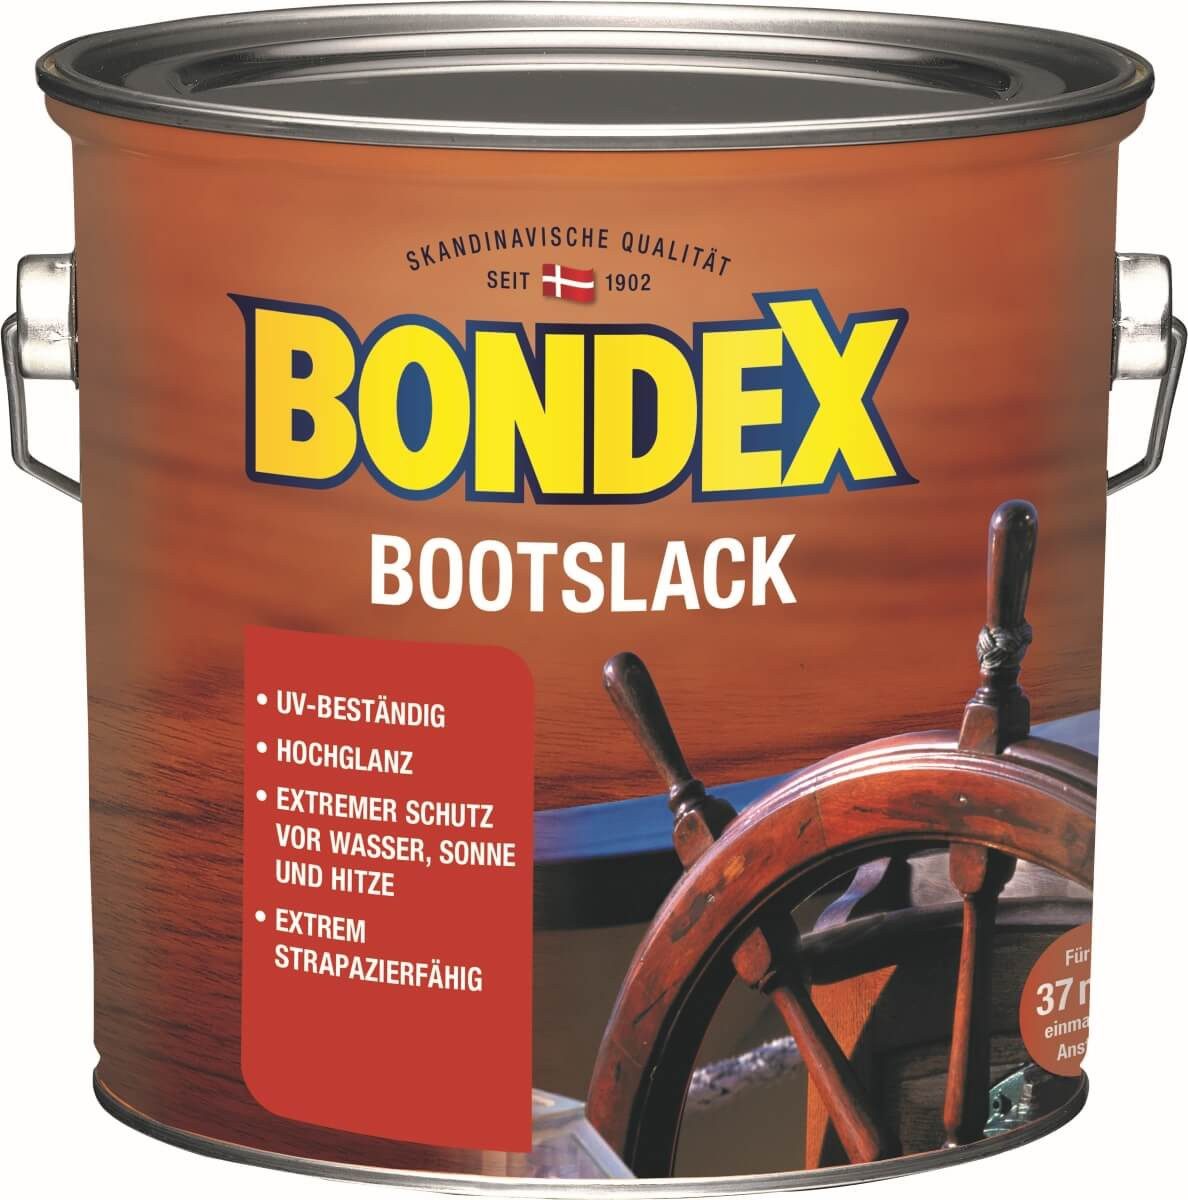 Bondex Lack Bootslack für Innen und Aussen, Hochglanz, Farblos, UV-beständig